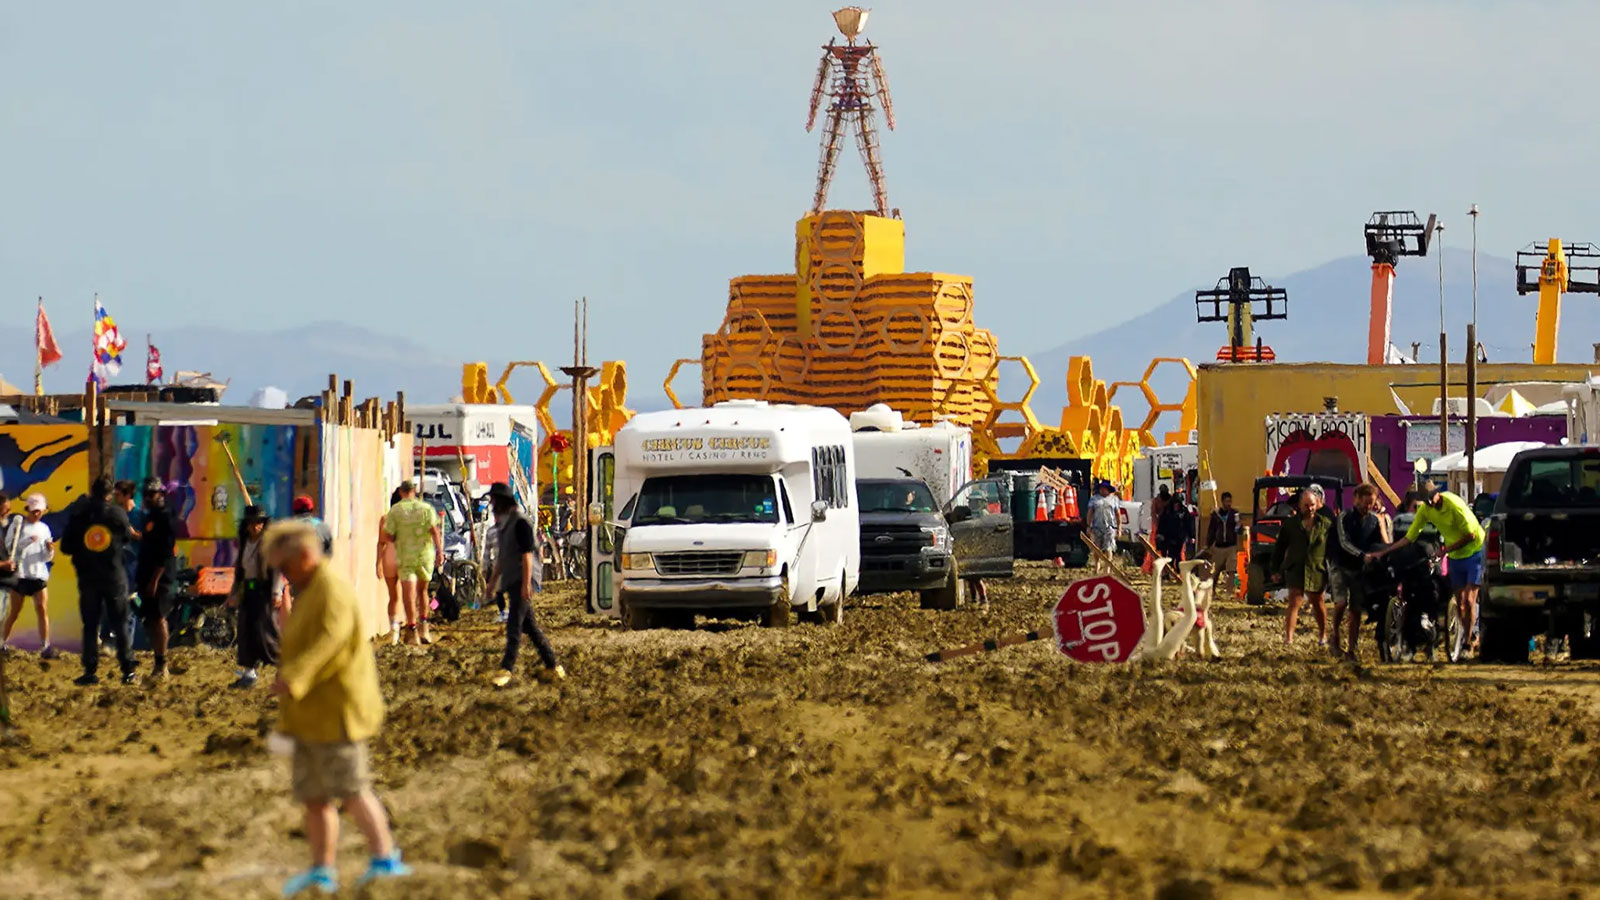 Burning Man e o impacto das mudanças climáticas nos festivais ao ar livre